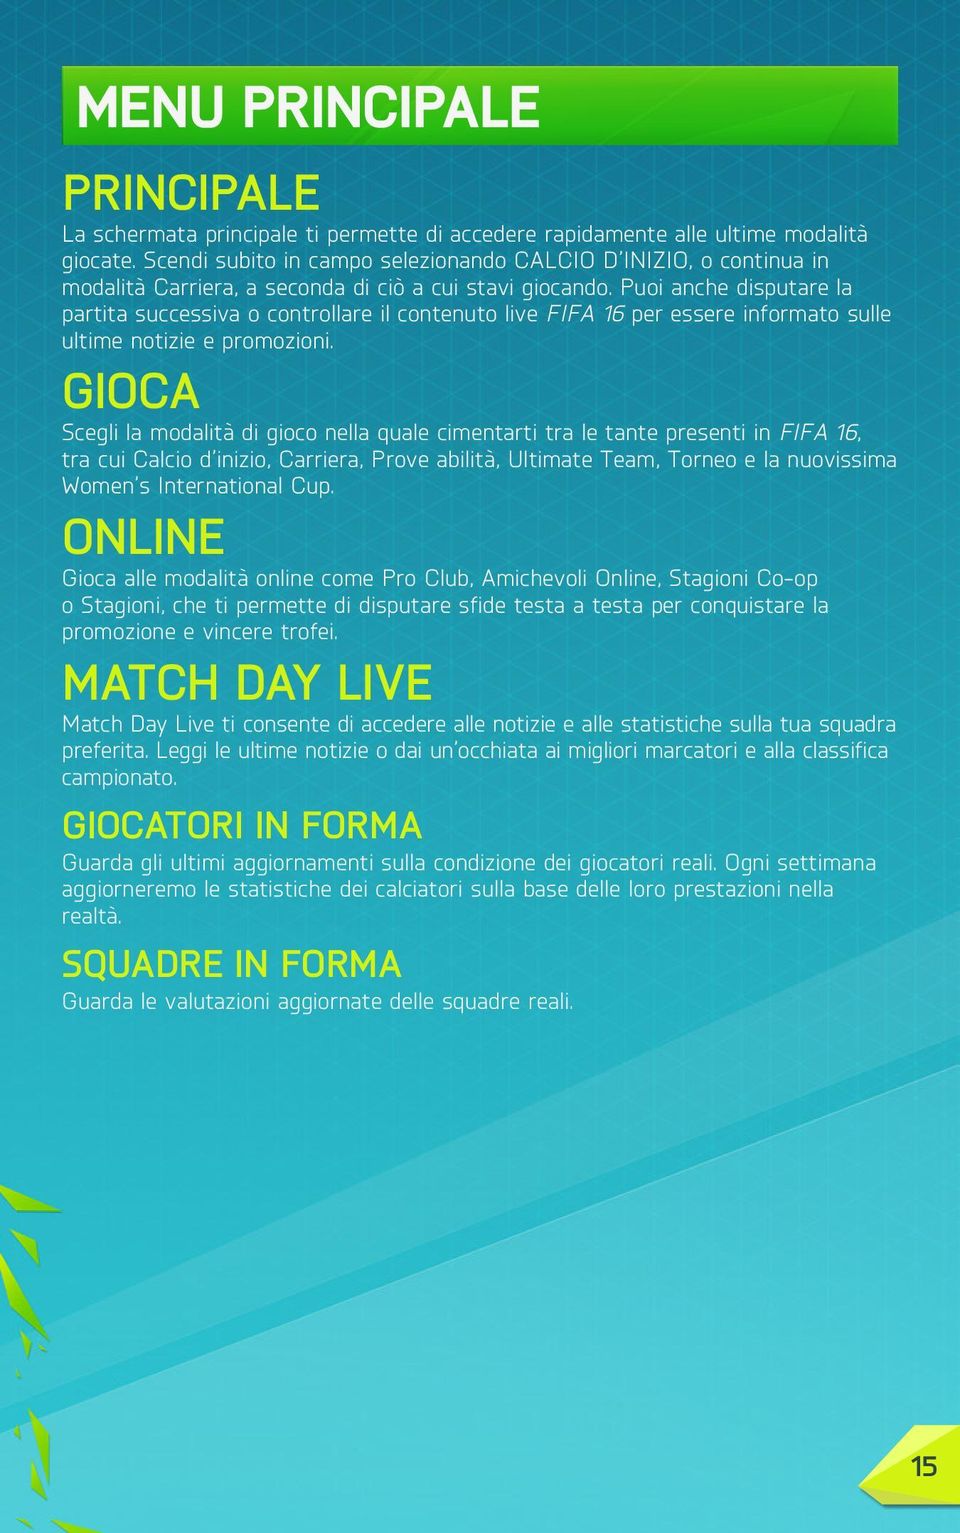 Puoi anche disputare la partita successiva o controllare il contenuto live FIFA 16 per essere informato sulle ultime notizie e promozioni.